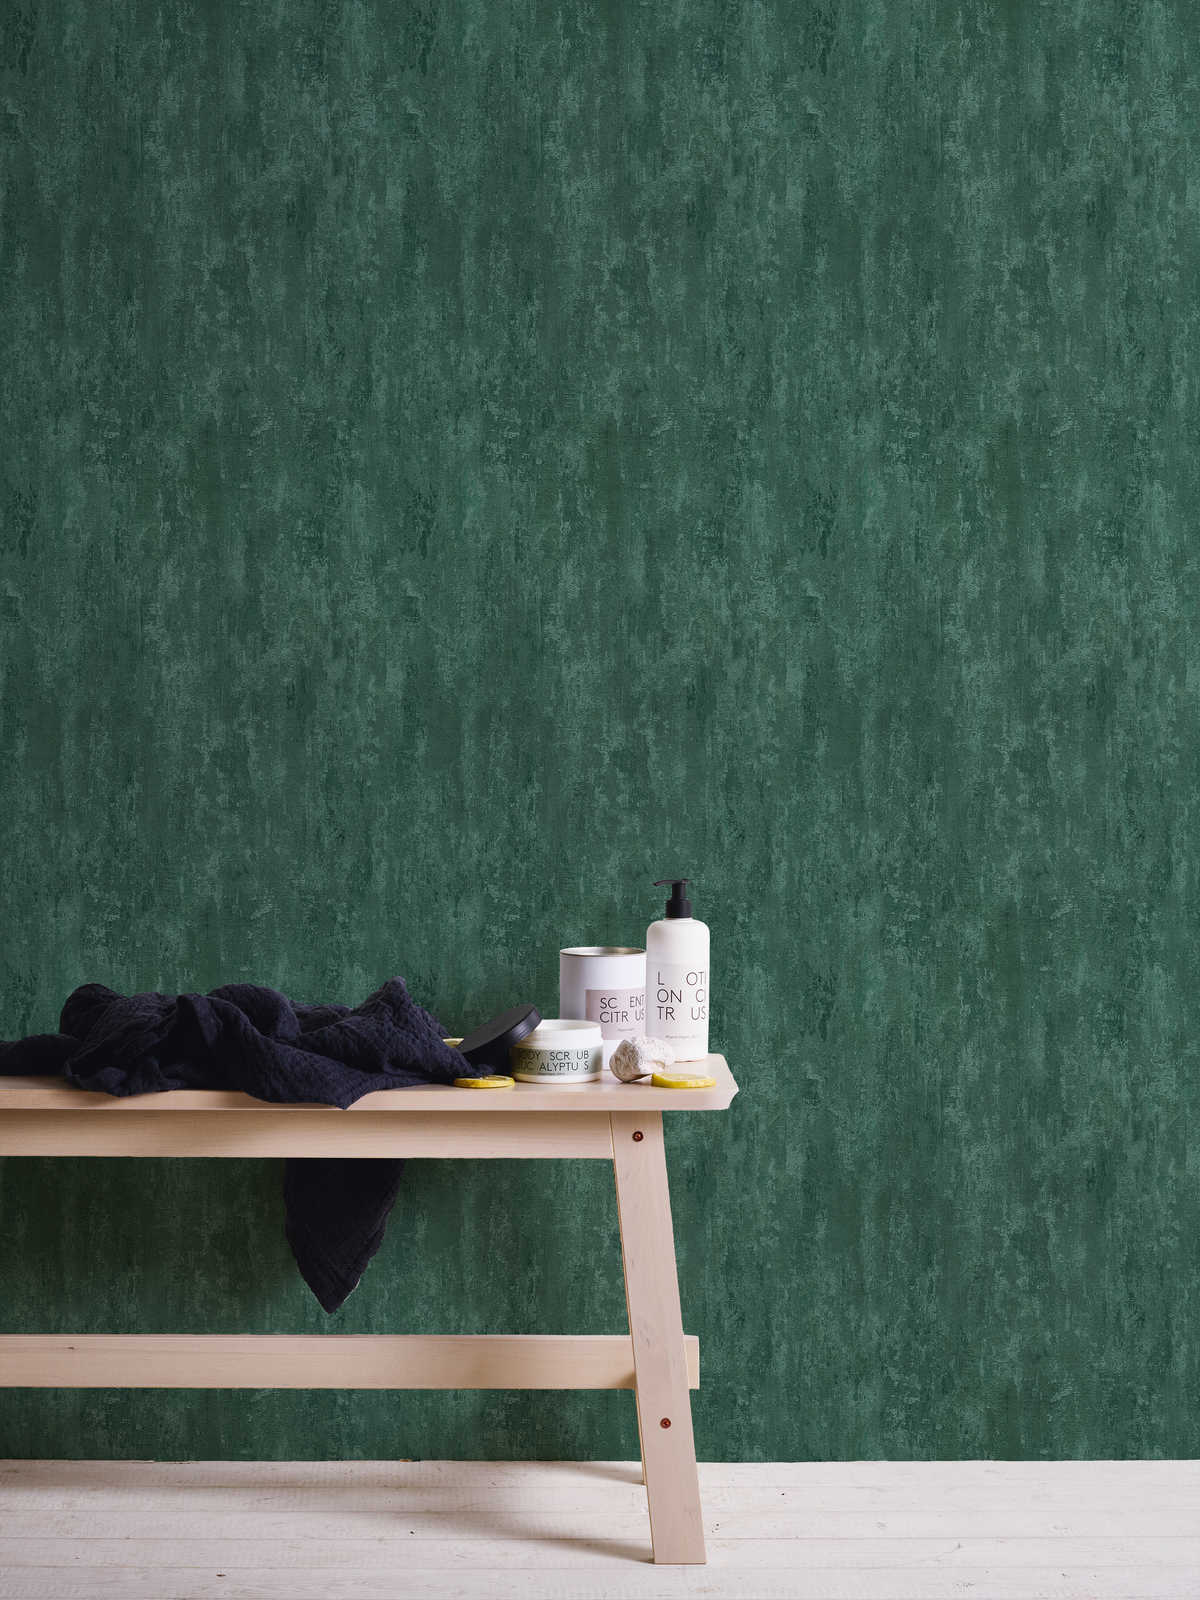             behangpapier industriële stijl met textuureffect - groen, metallic
        